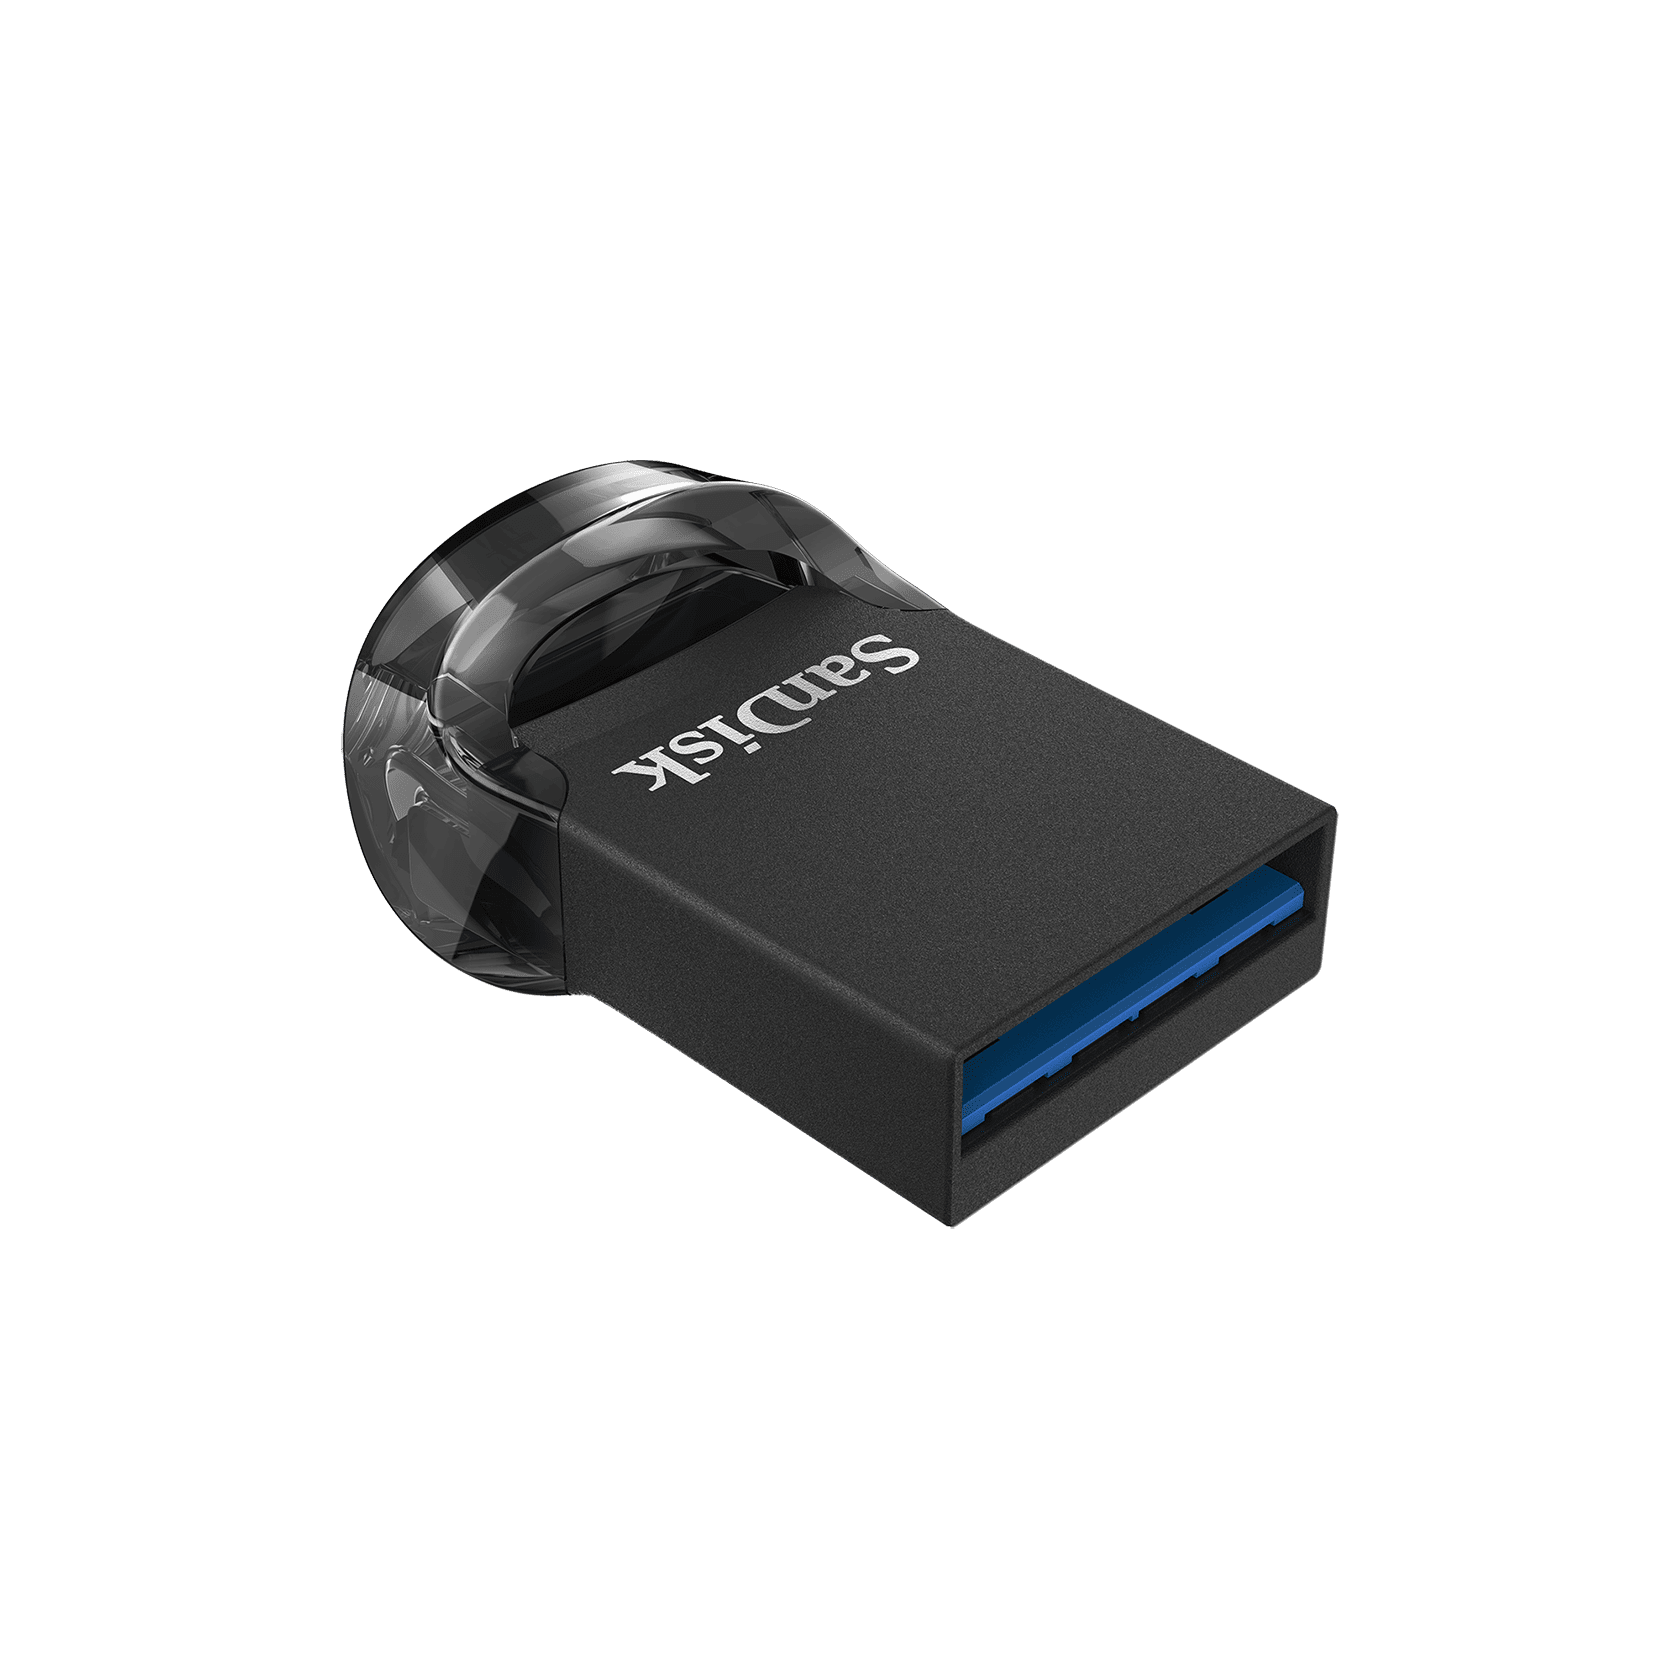 SanDisk Ultra Fit USB Flash Drive 32GB Black - Walmart.com